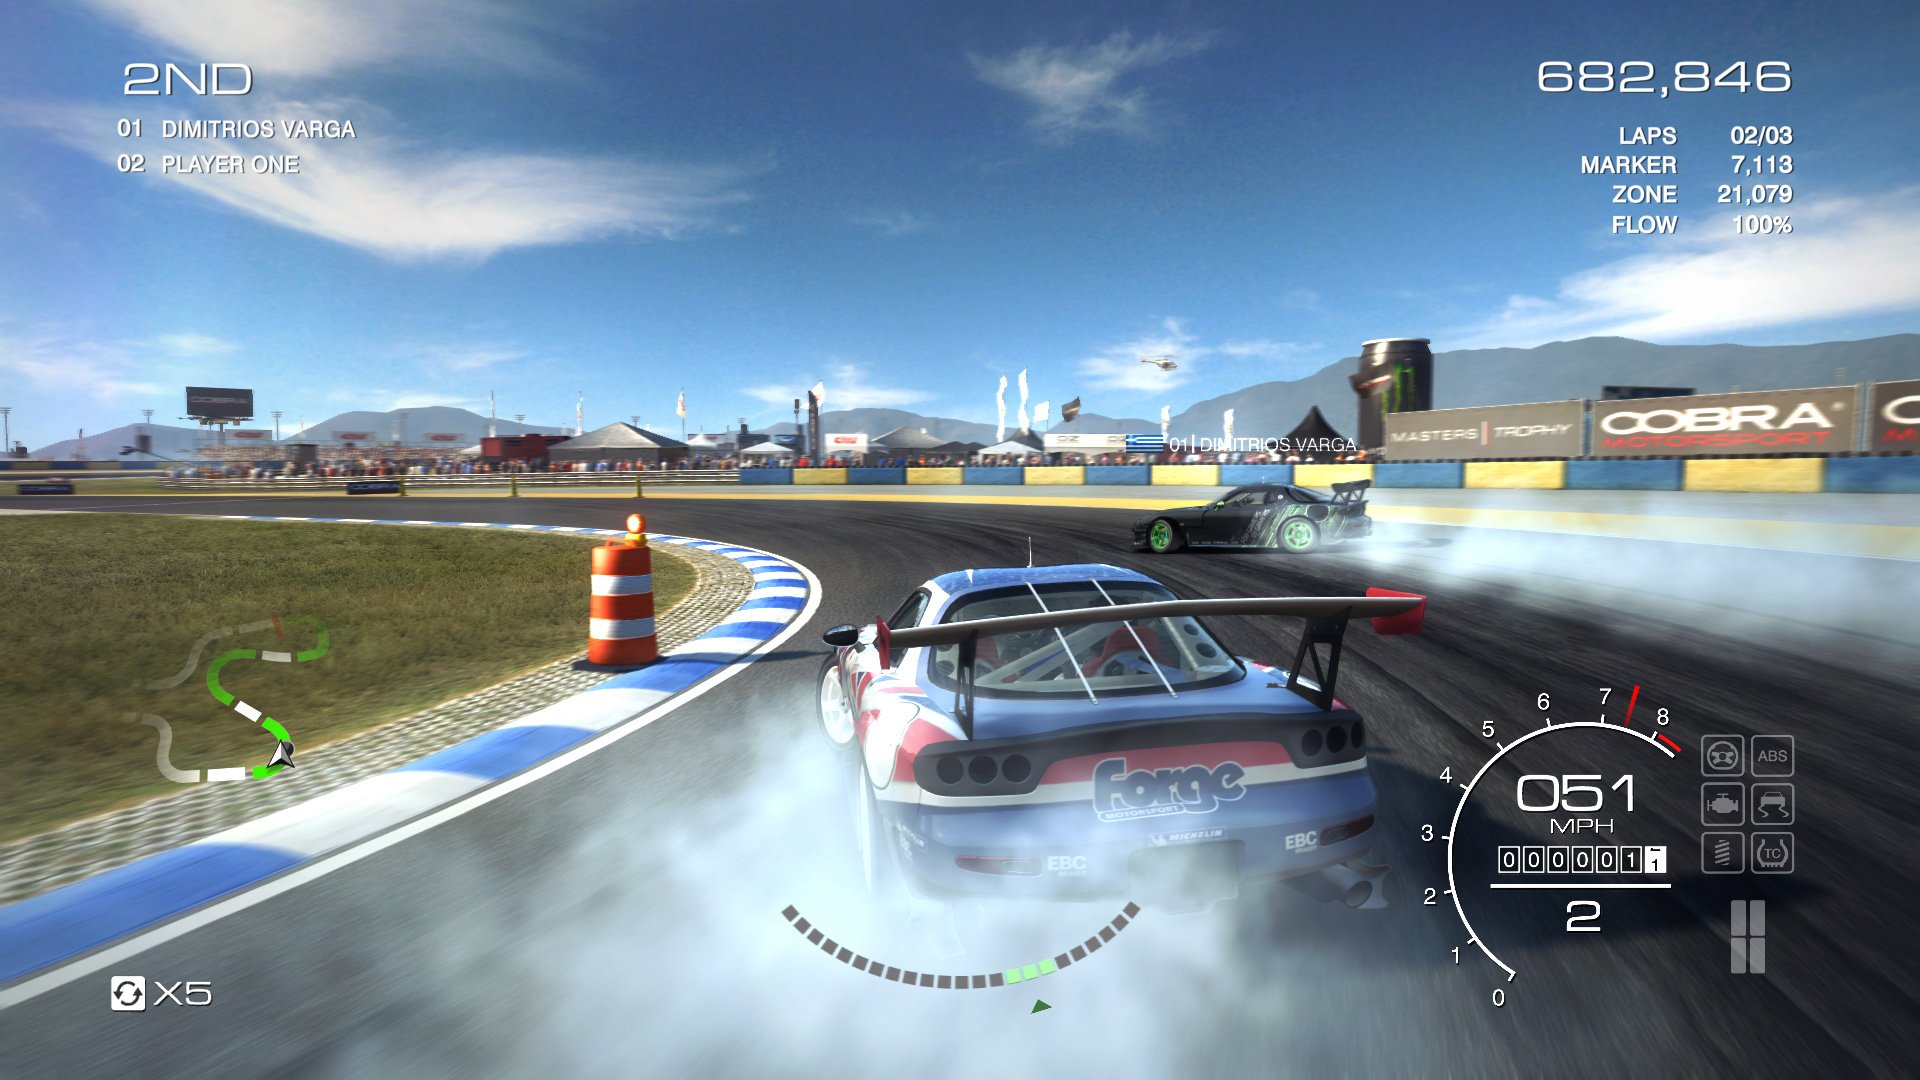 1080p grid autosport image